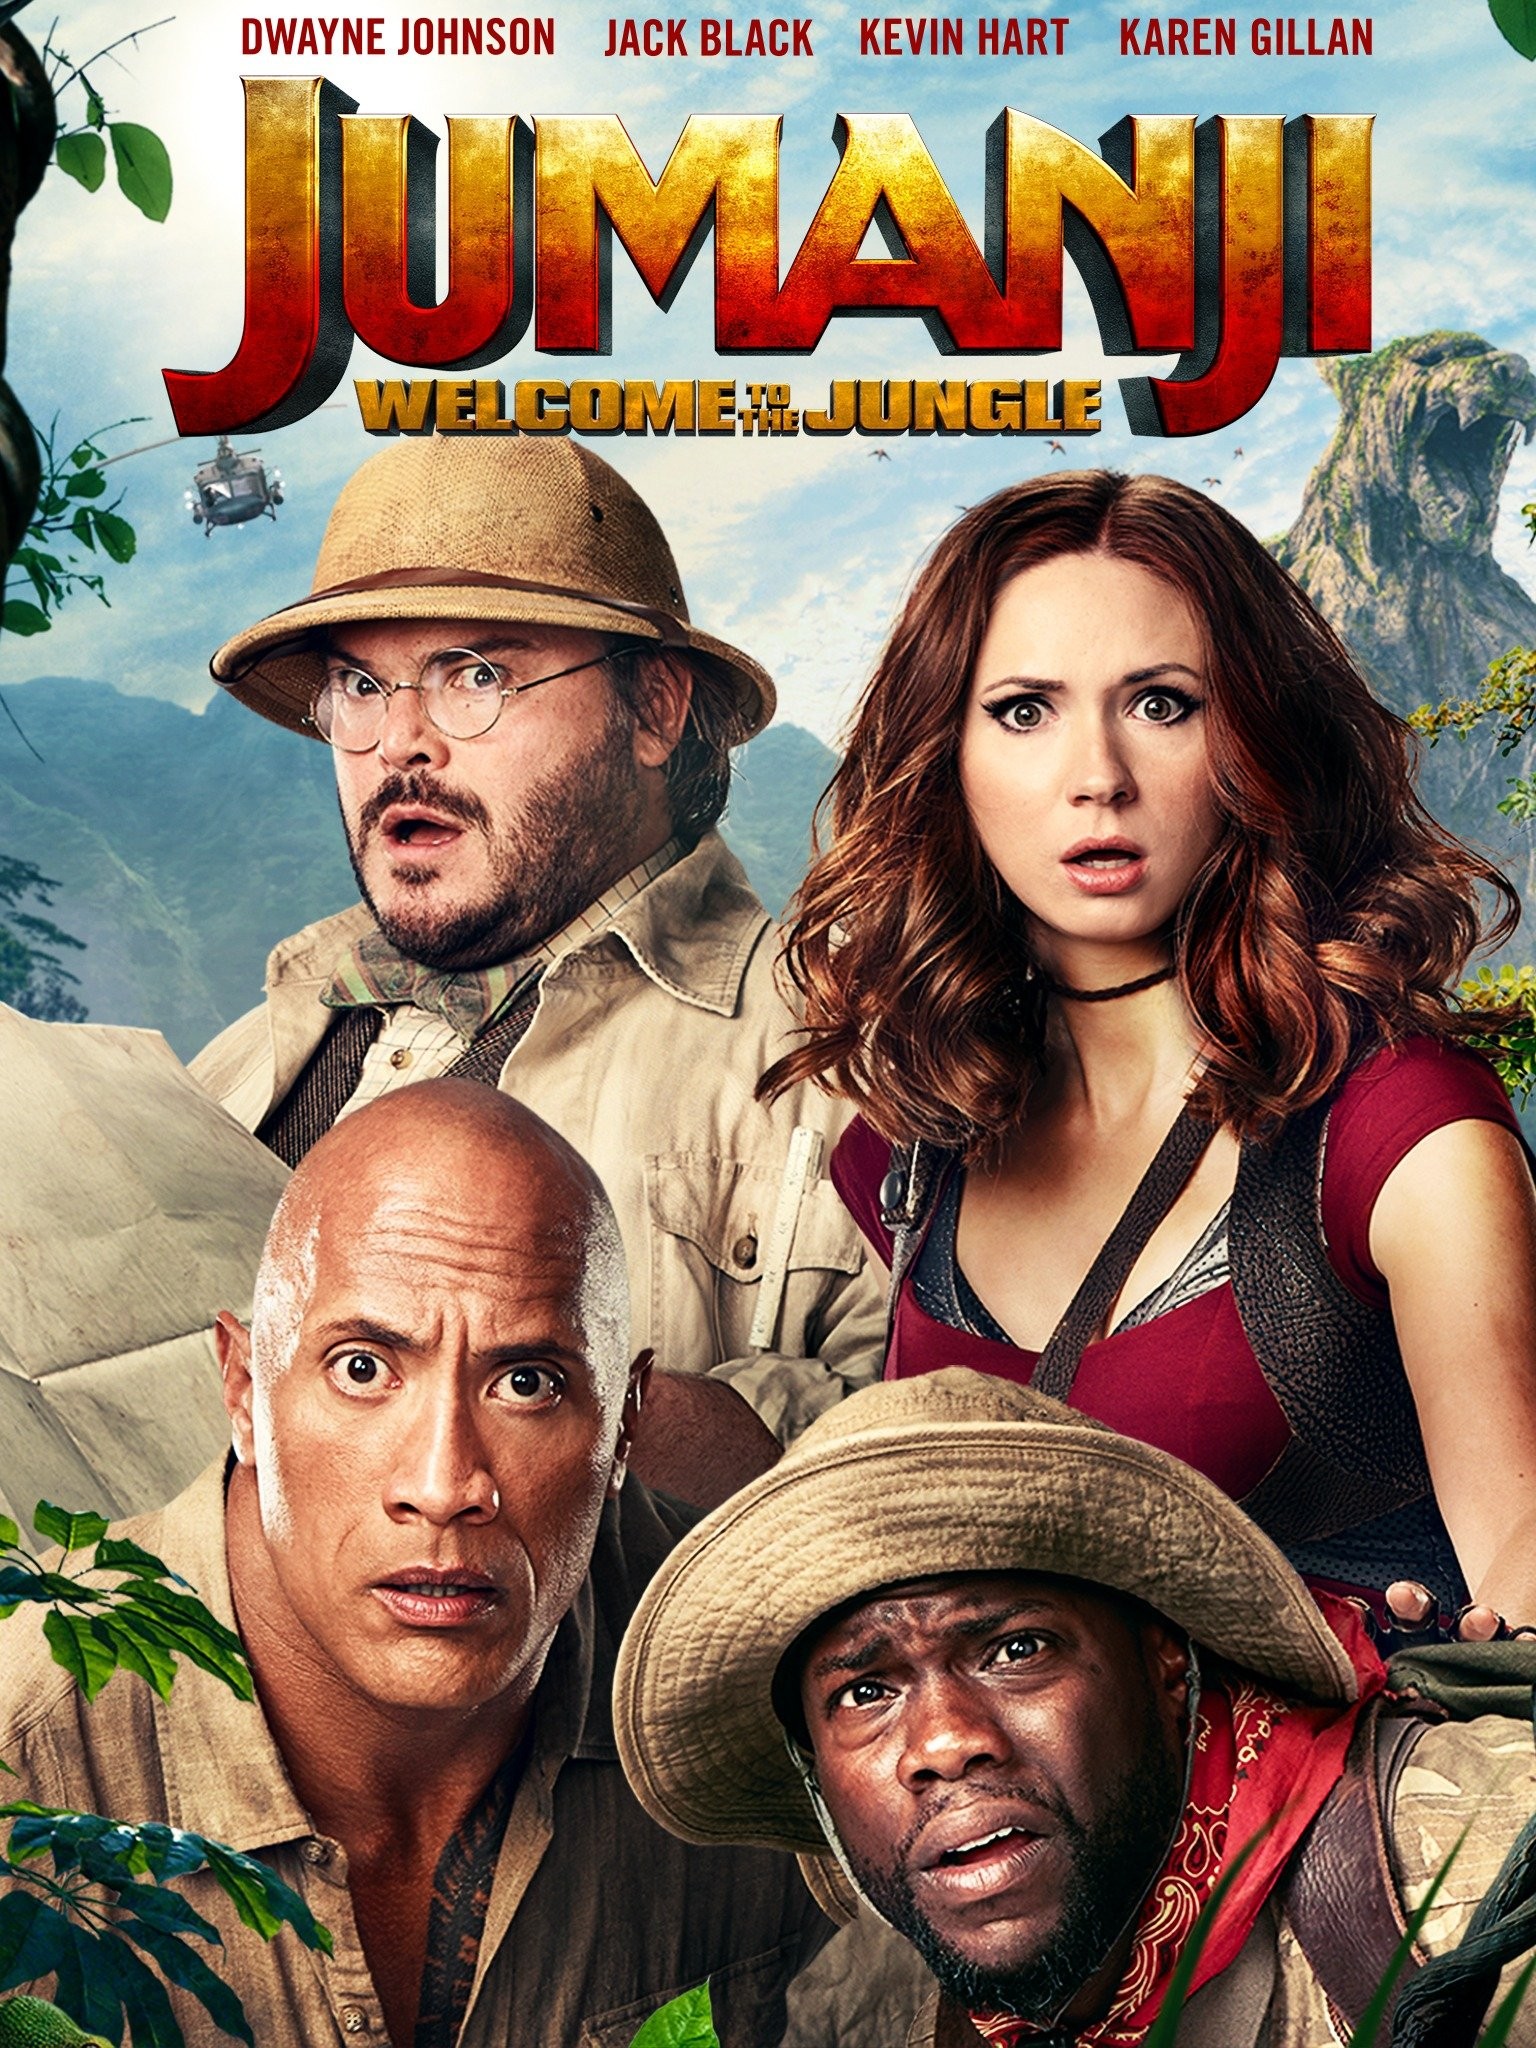 Jumanji - Welcome to the Jungle Posters - Jack Black - A3 & A4